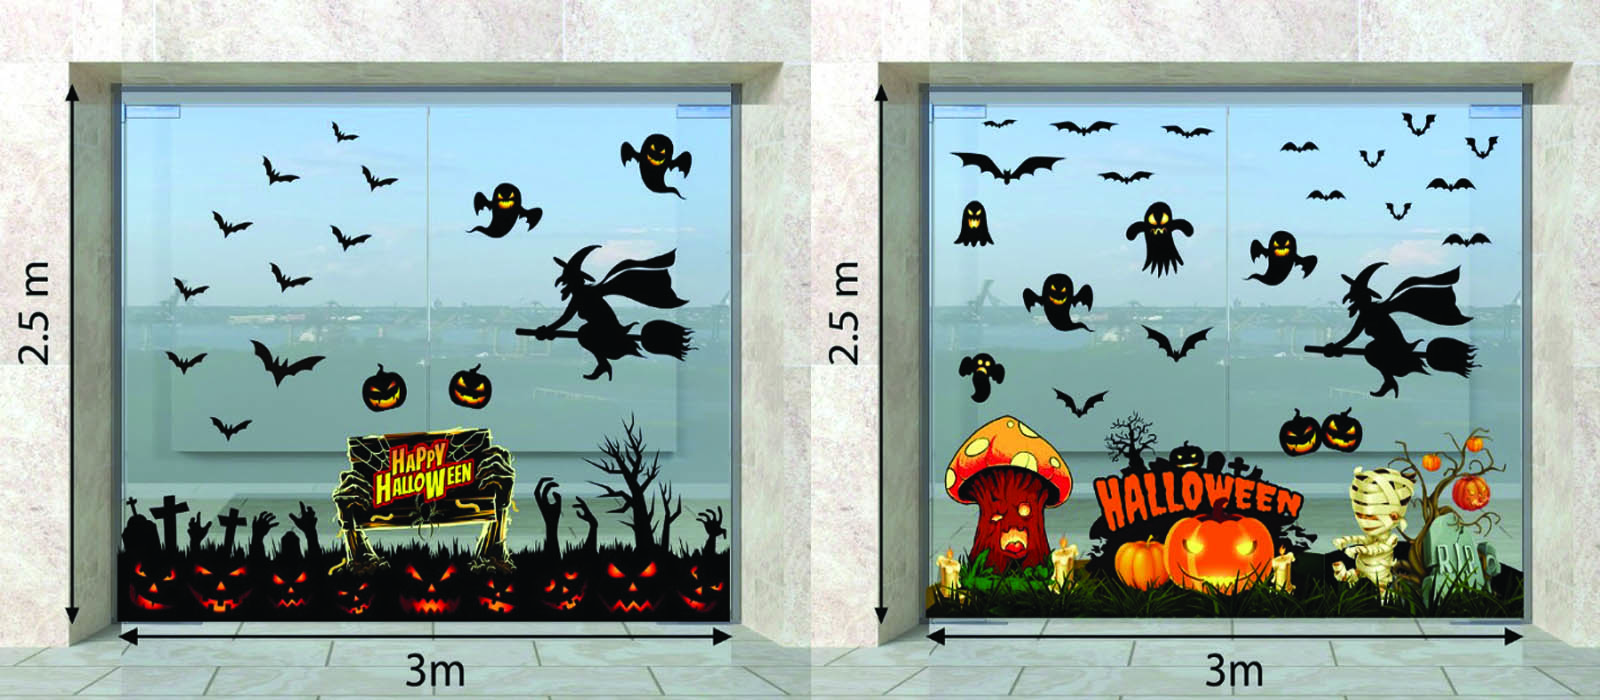 trang trí halloween trên cửa kính